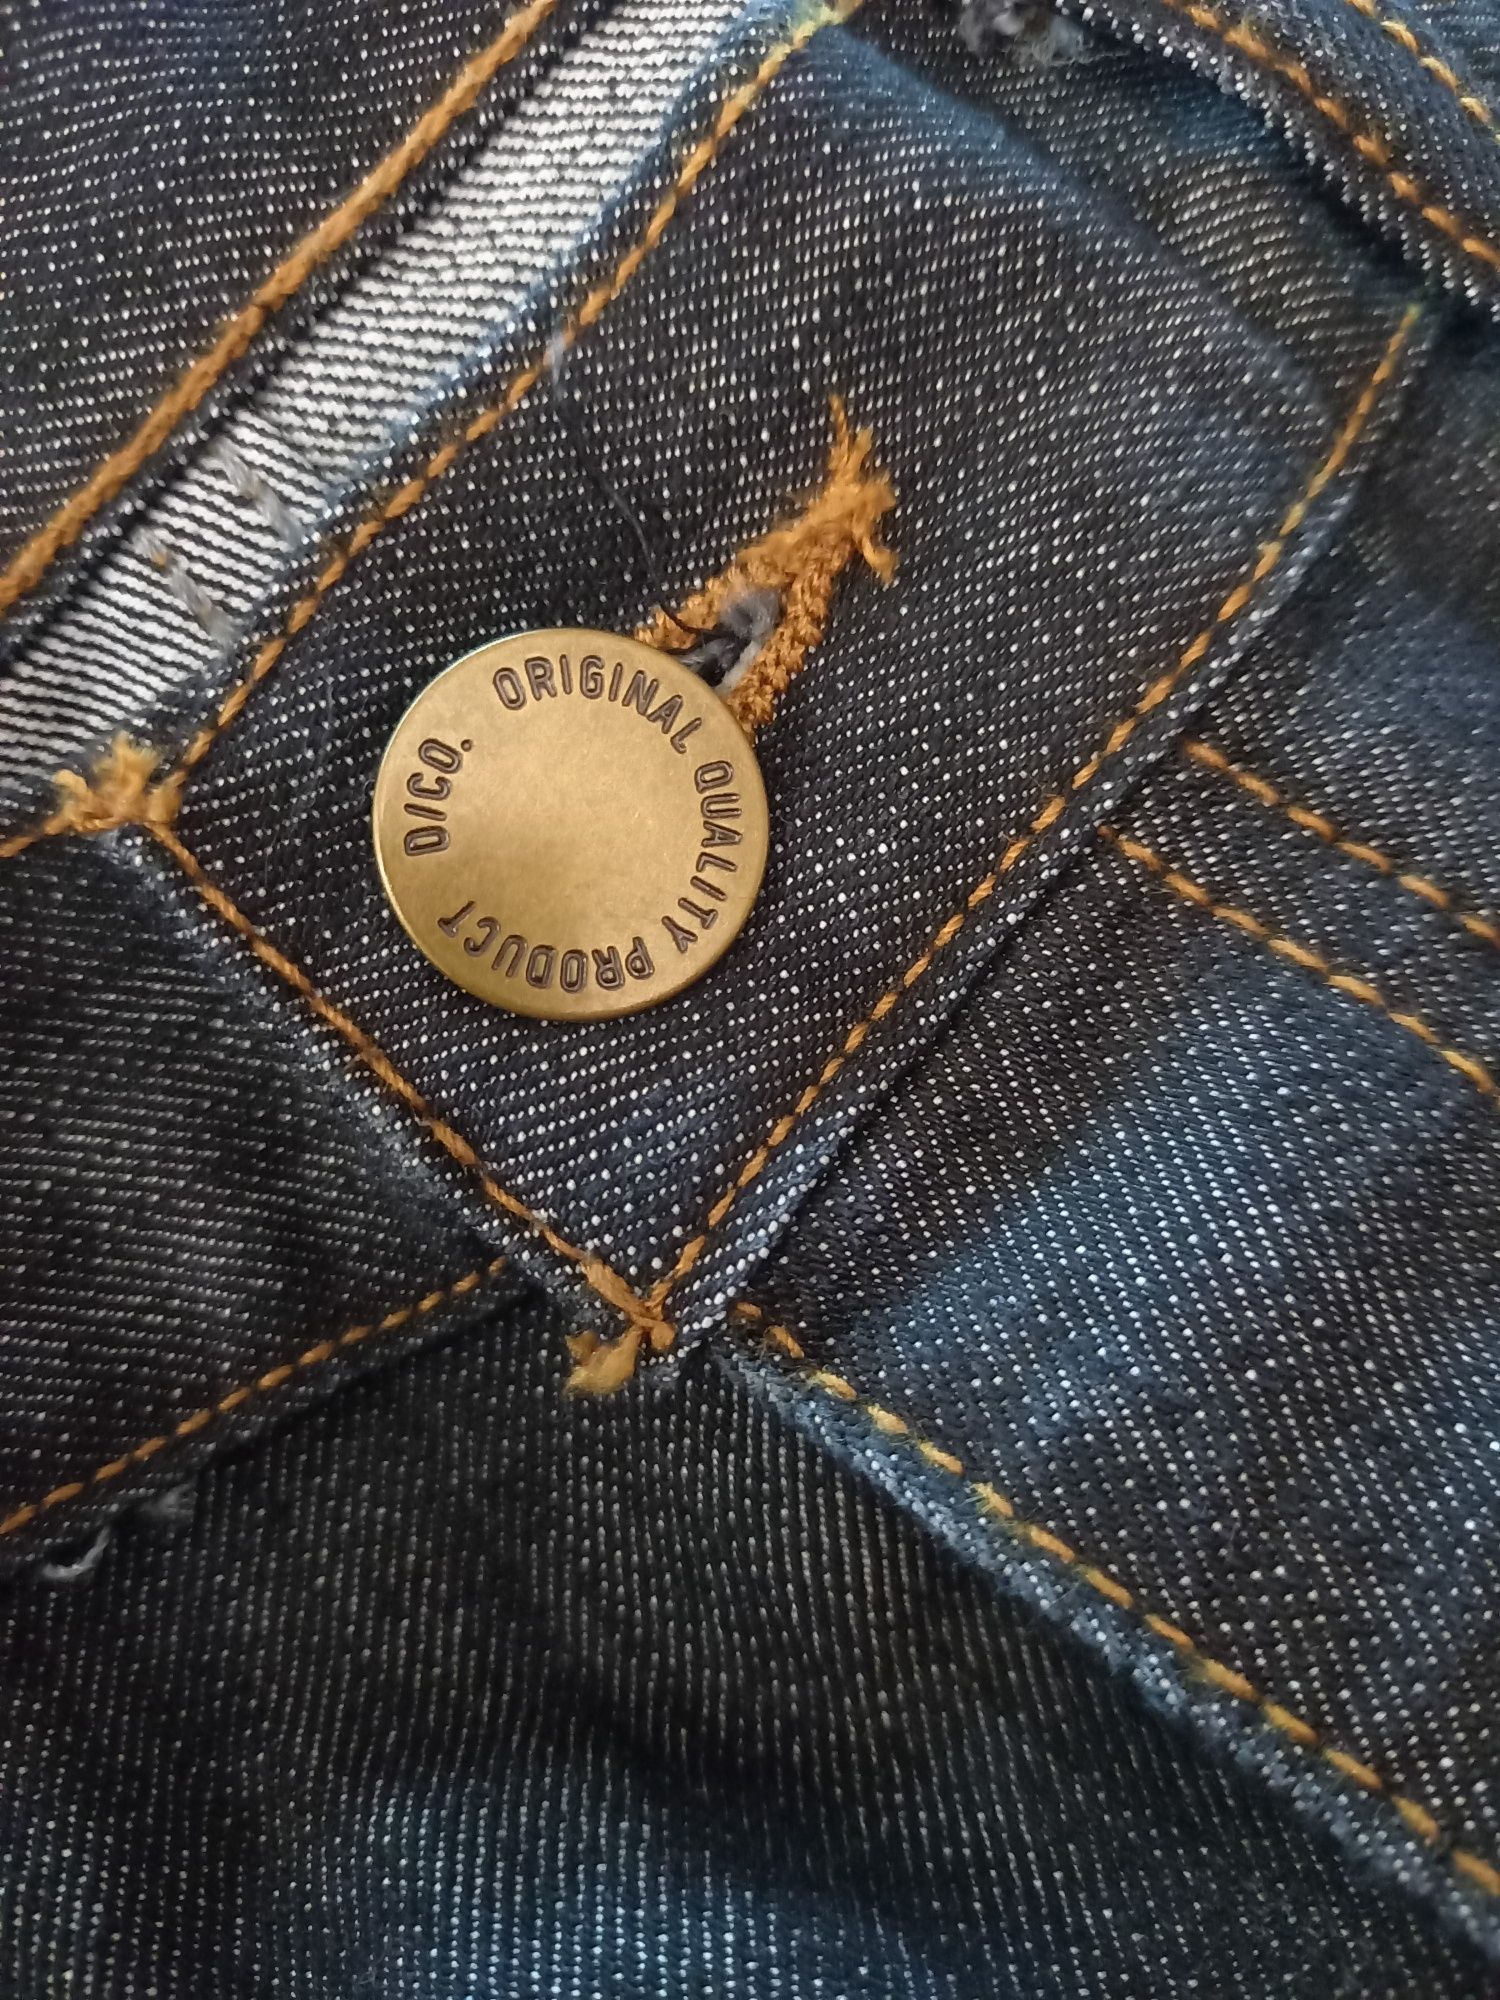 Spodnie jeansy, męskie Denim CO, W30 L30 - NOWE